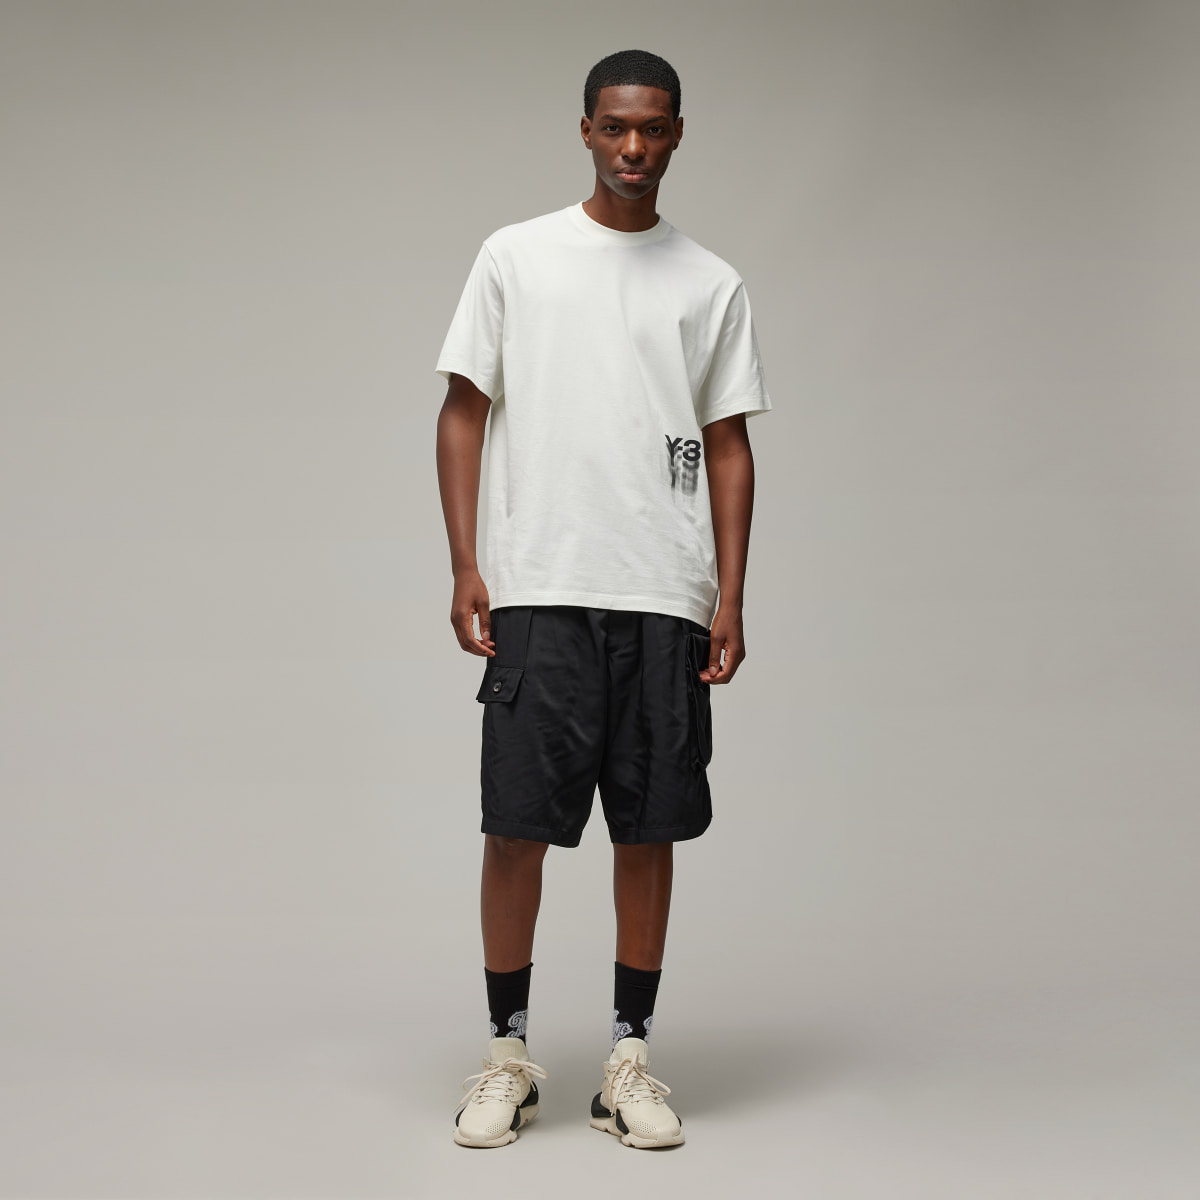 Adidas Koszulka Y-3 Graphic Short Sleeve. 4